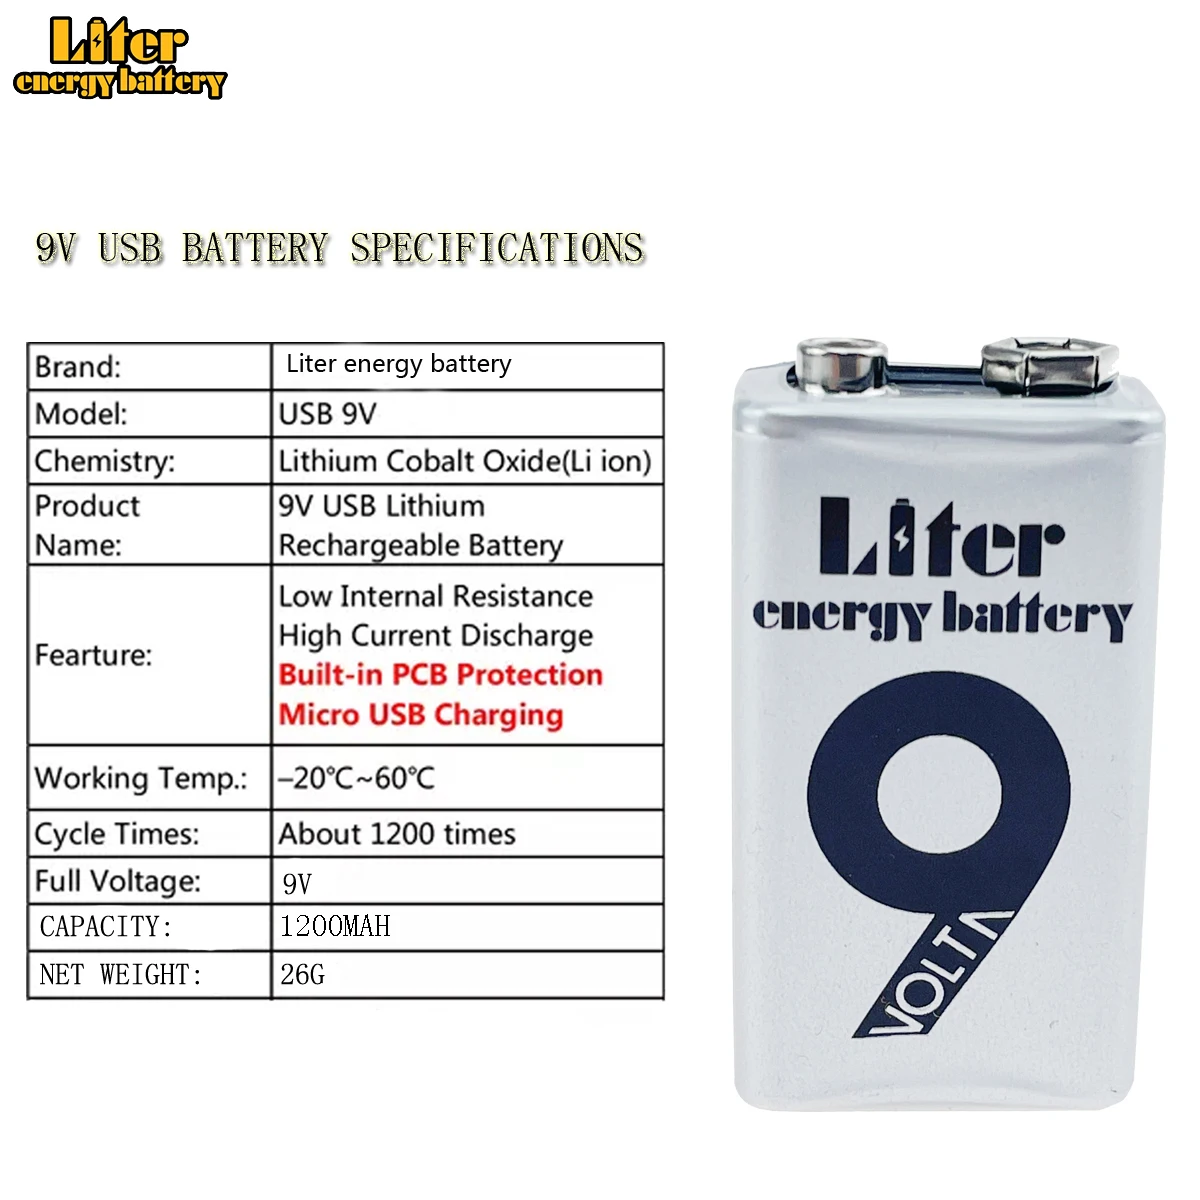 Bateria 9v Litio Recargable X Usb 1200 Mah Maxima Capacidad.